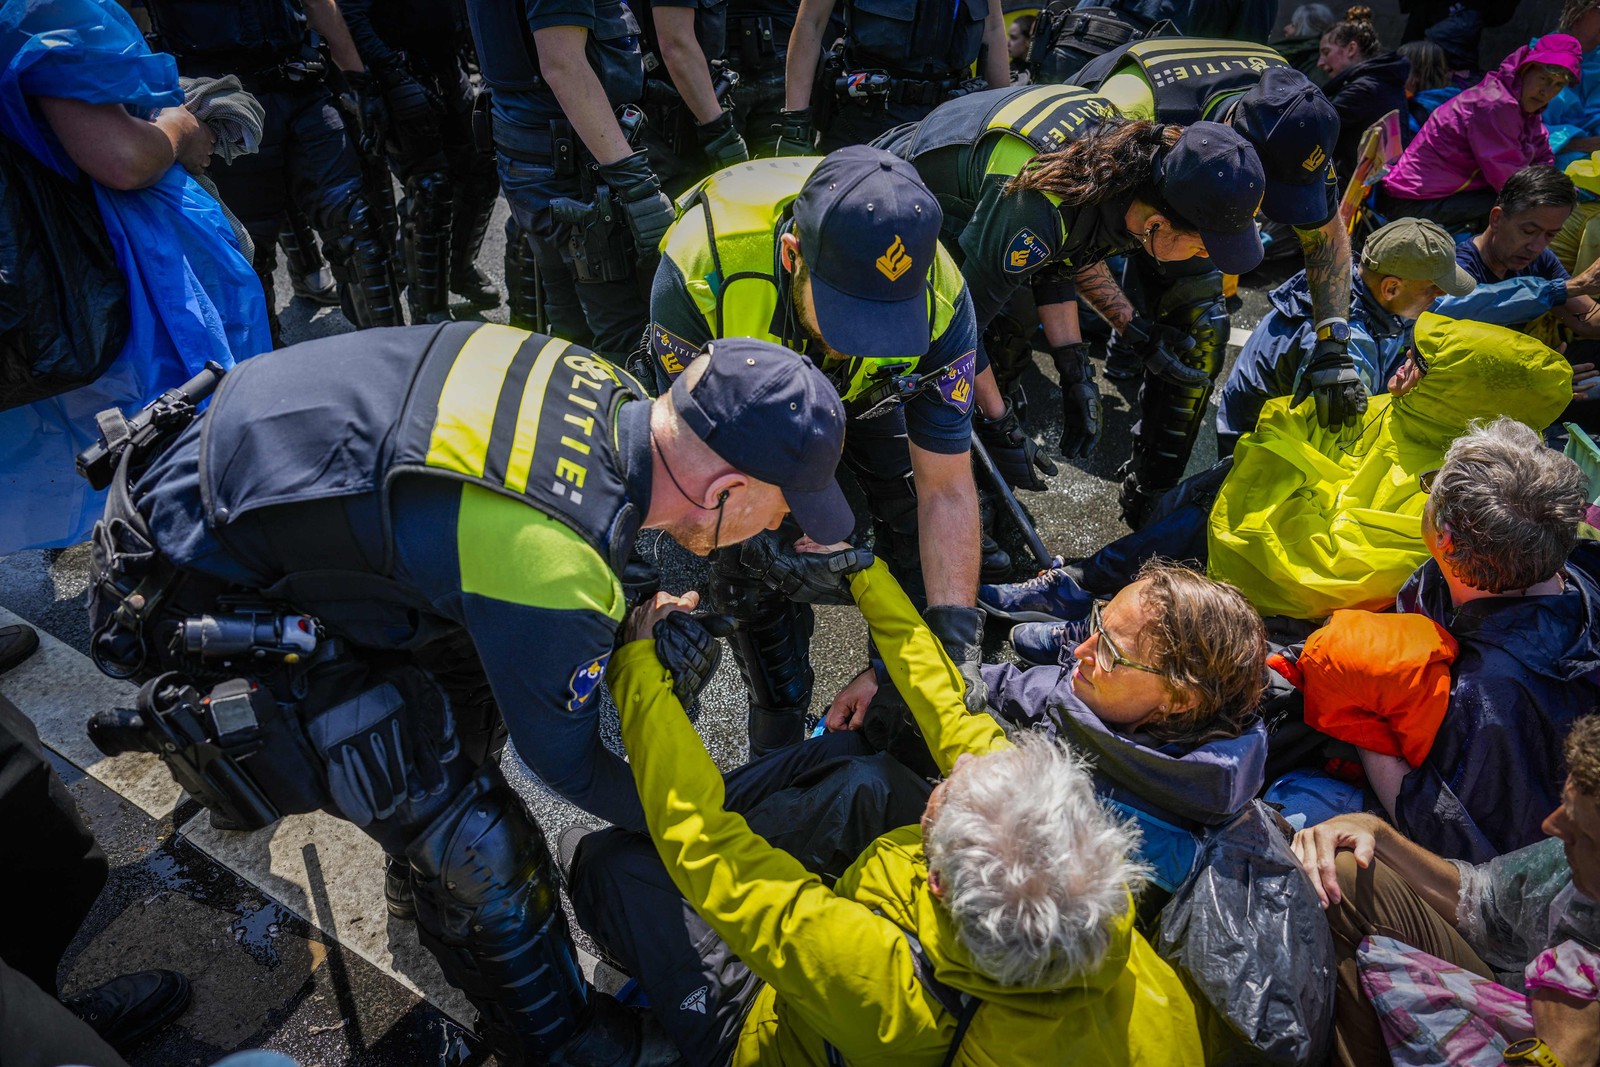 Polícia prende ativistas do Extinction Rebellion (XR) durante protesto, enquanto bloqueavam a auto-estrada A12 em Haia. Os ativistas protestavam contra a política de subsídios fósseis do governo holandês. — Foto: Sem van der Wal / ANP / AFP